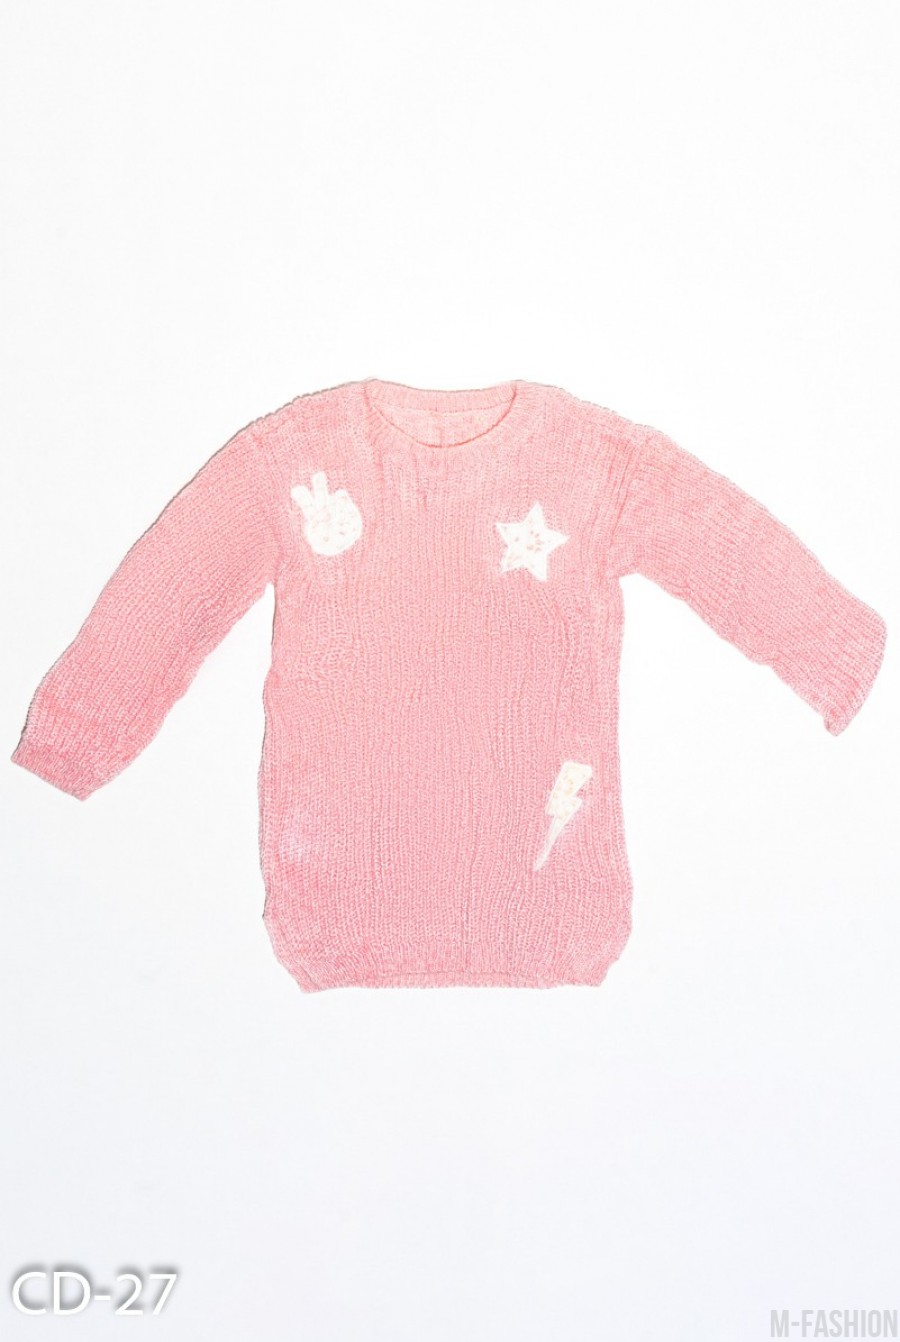 Розовый вязаный свитер с кружевными белыми нашивками - Фото 1